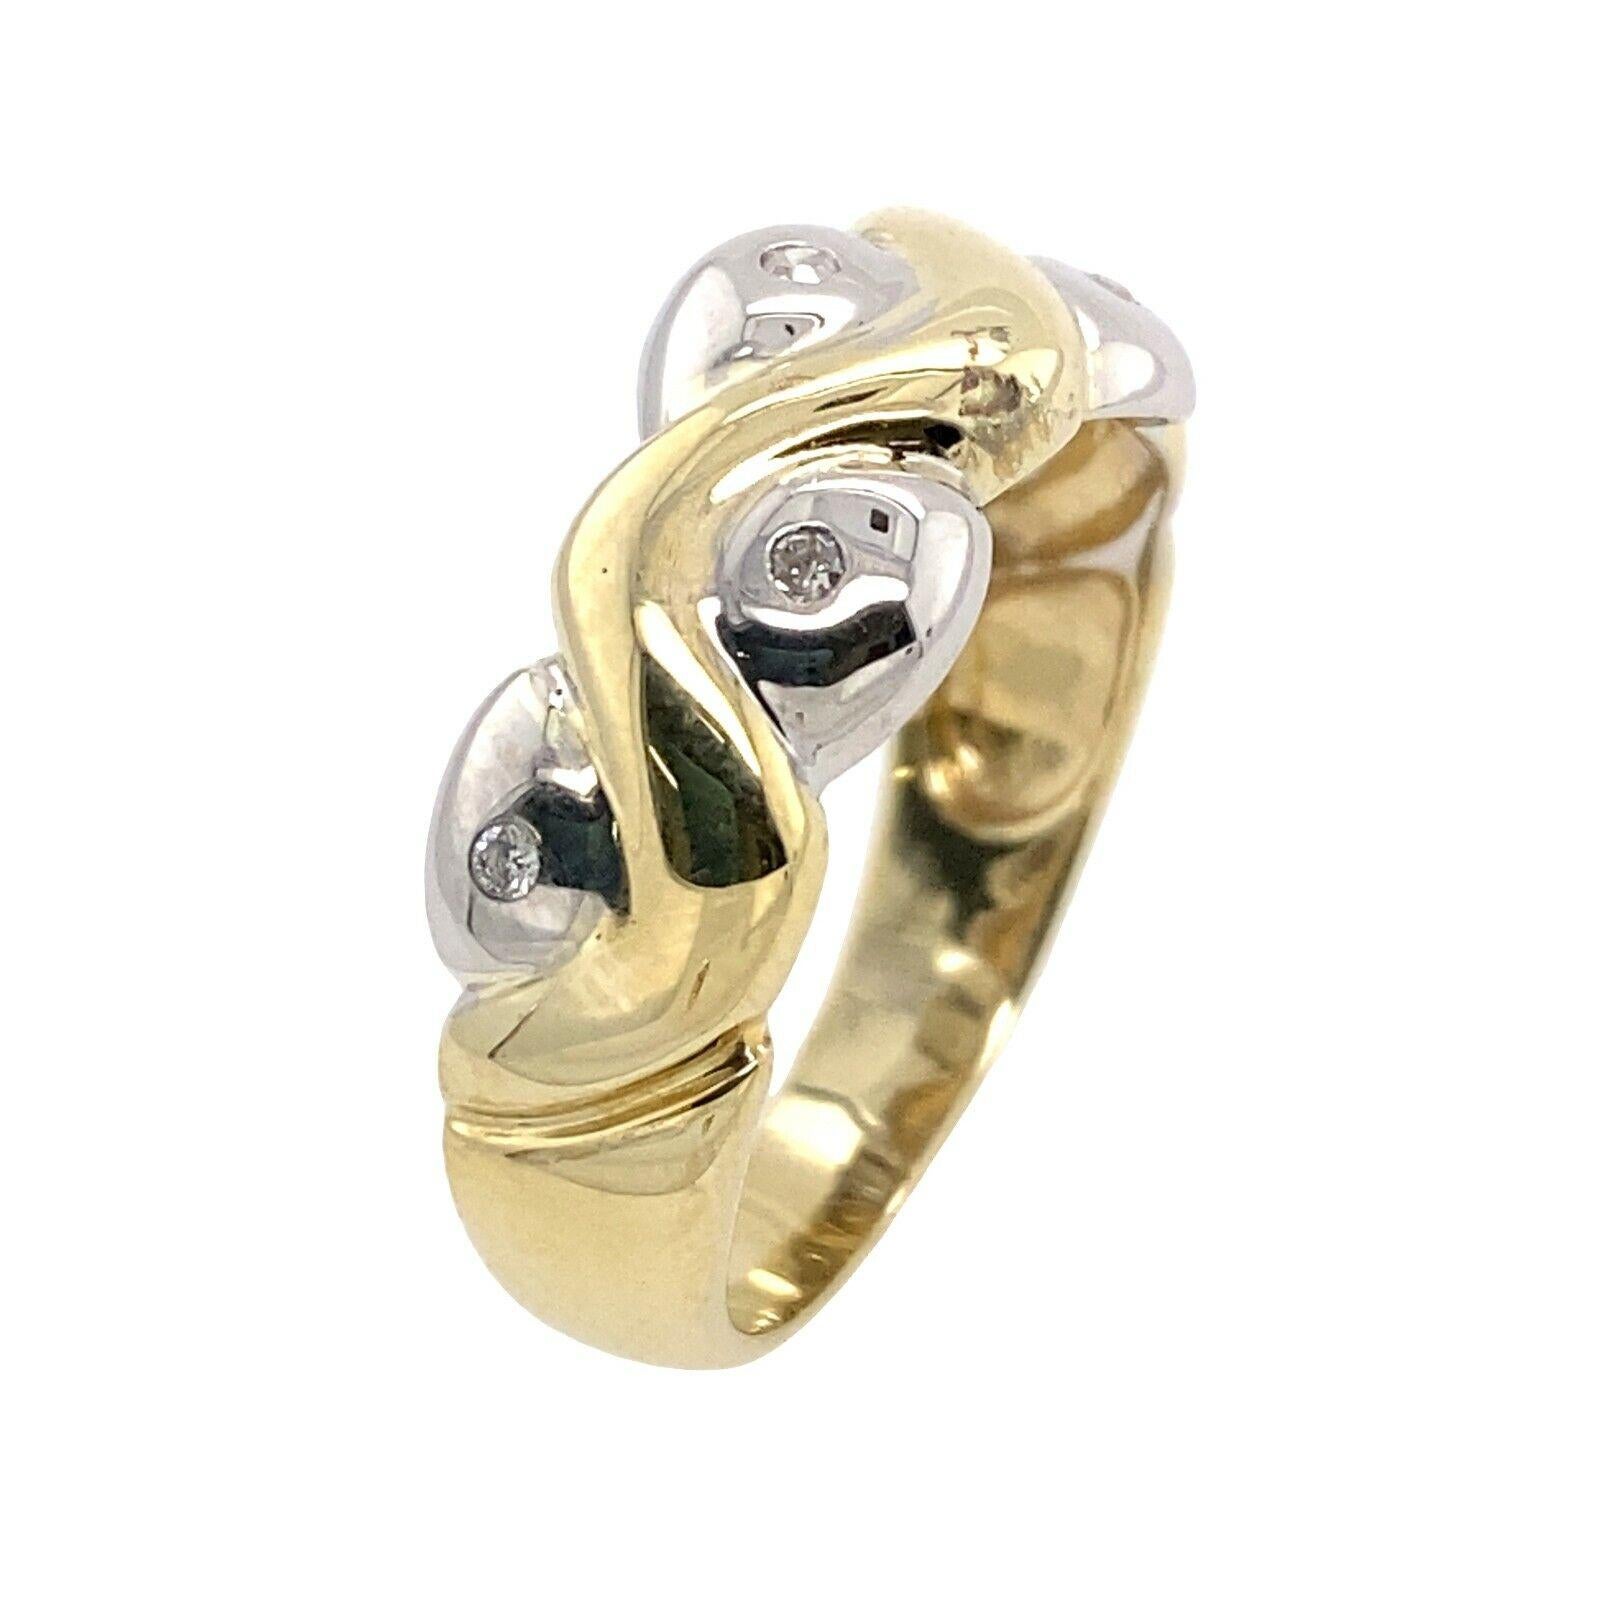 9ct Gelb &Weiß Gott Diamond Set Kleid Ring

Dieser elegante, mit Diamanten besetzte Ring ist mit 0,125ct Diamanten besetzt. Der Ring besteht aus 9 Karat Gelb- und Weißgold und ist das perfekte Geschenk für alle, die einen schlichten und eleganten